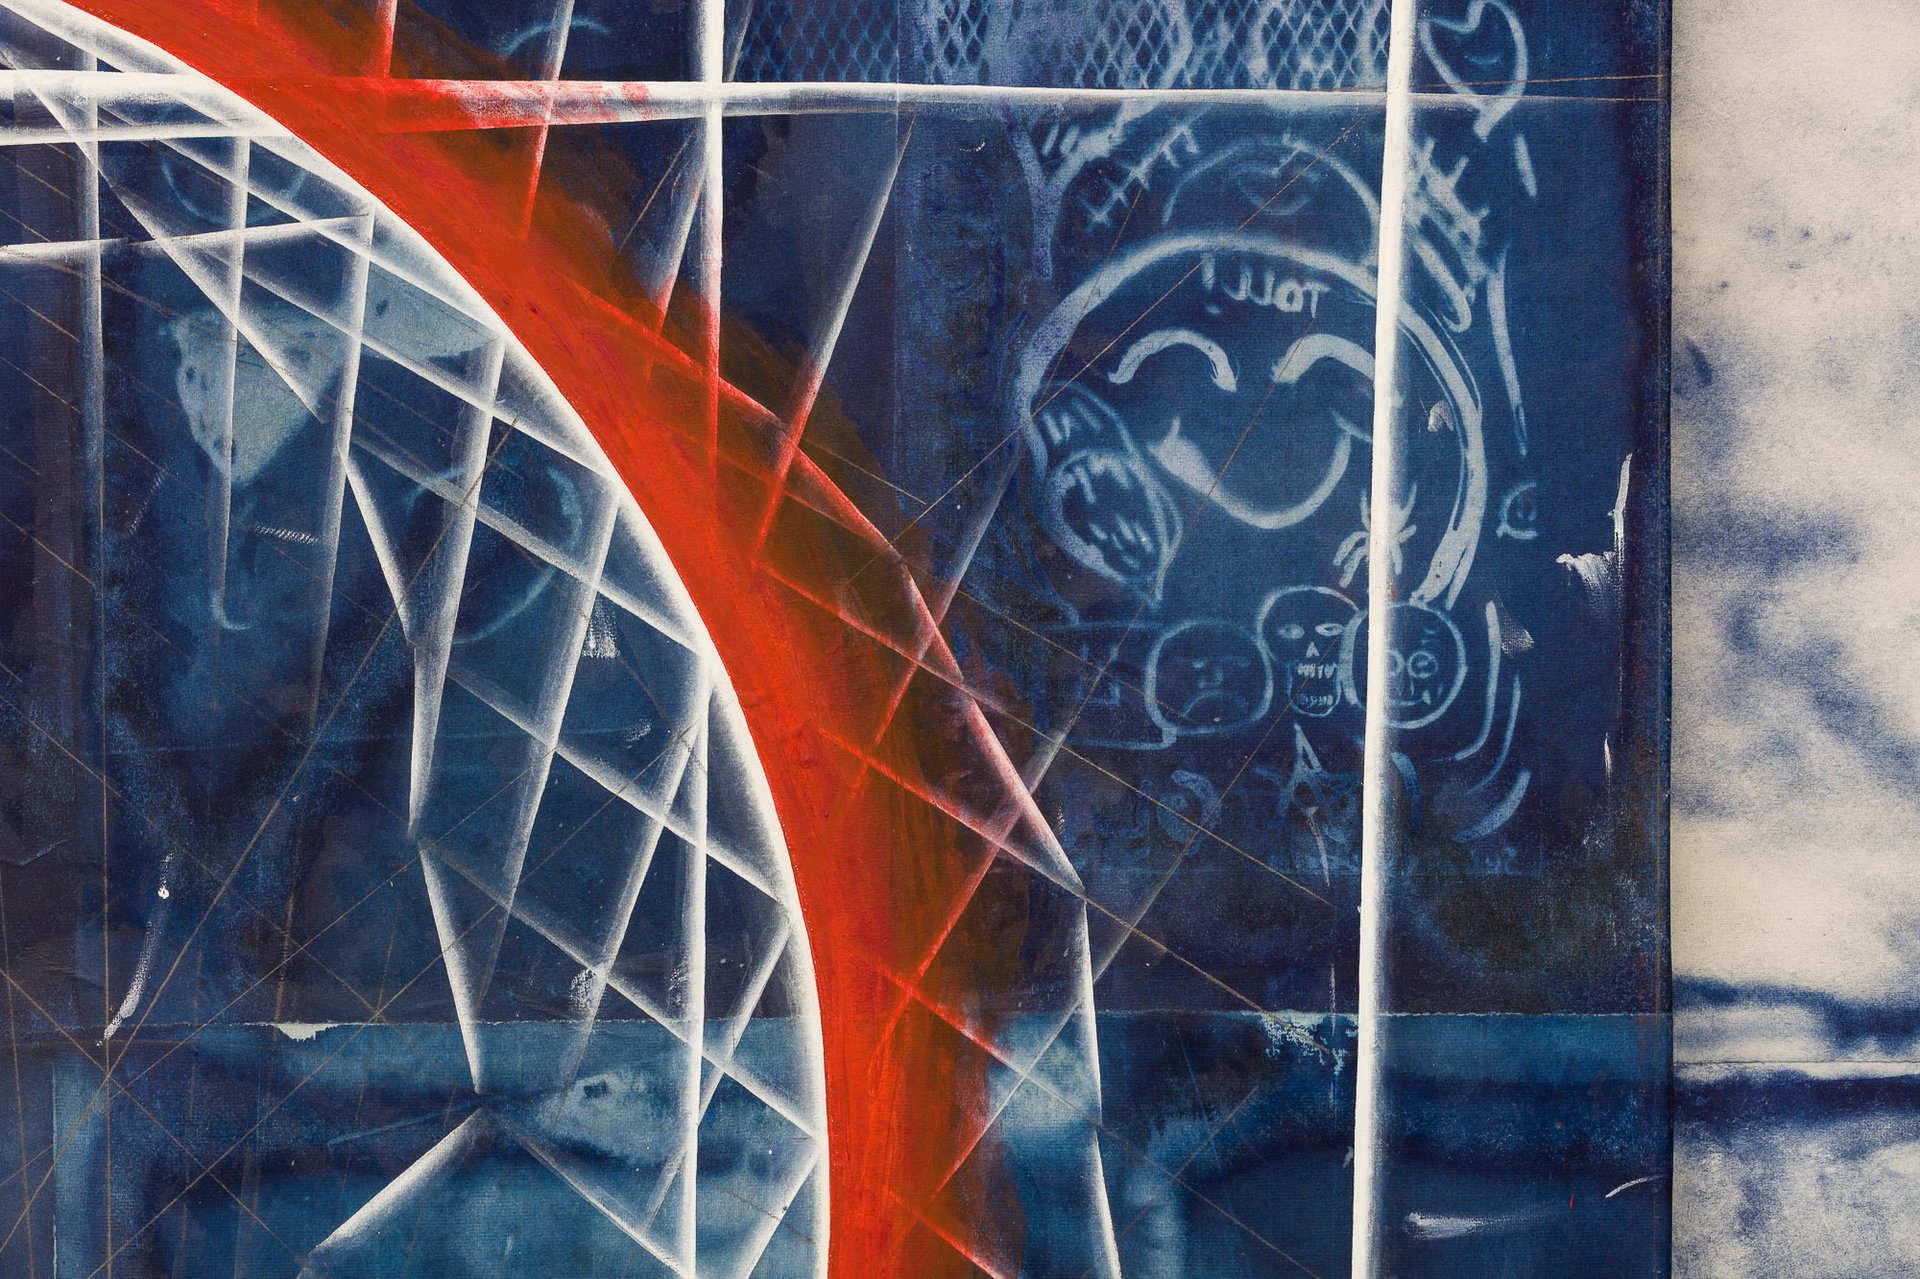 Tillman KaiserToll, 2021Oil/eggtempera on cyanotype on paper/canvas200 x 150 cmDetail view